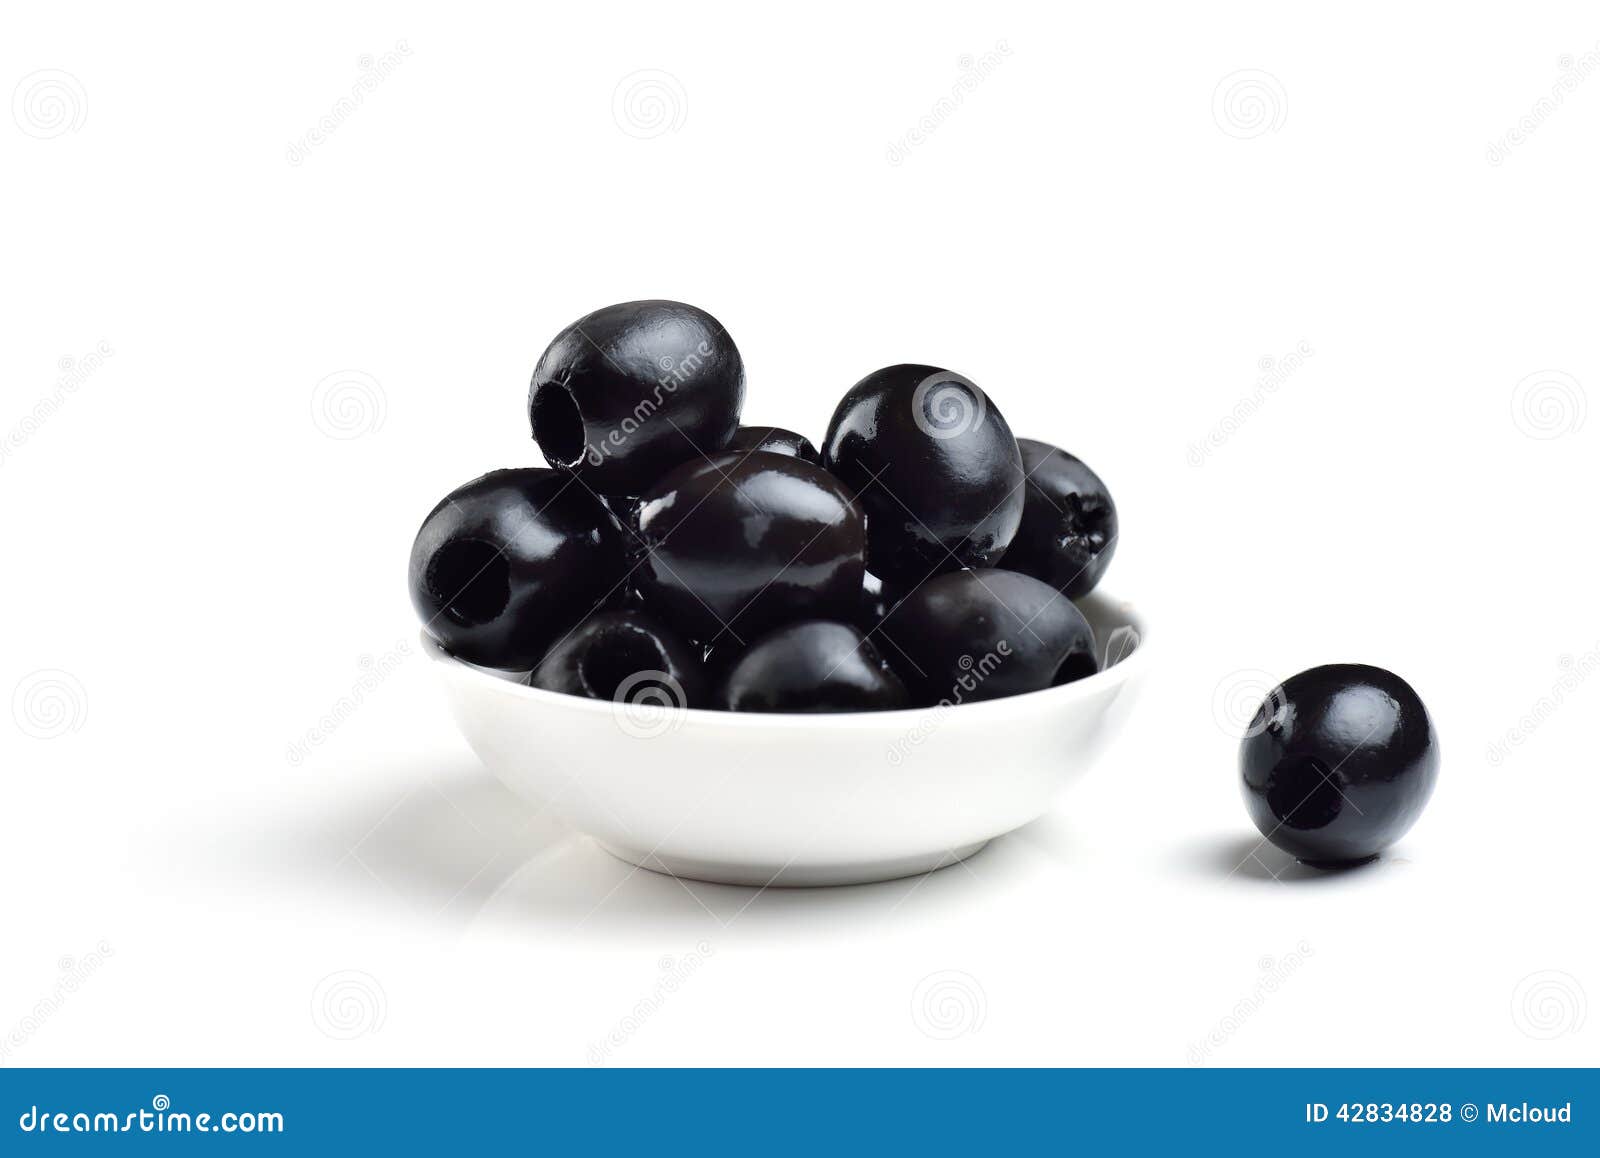 pickled pitted black olives